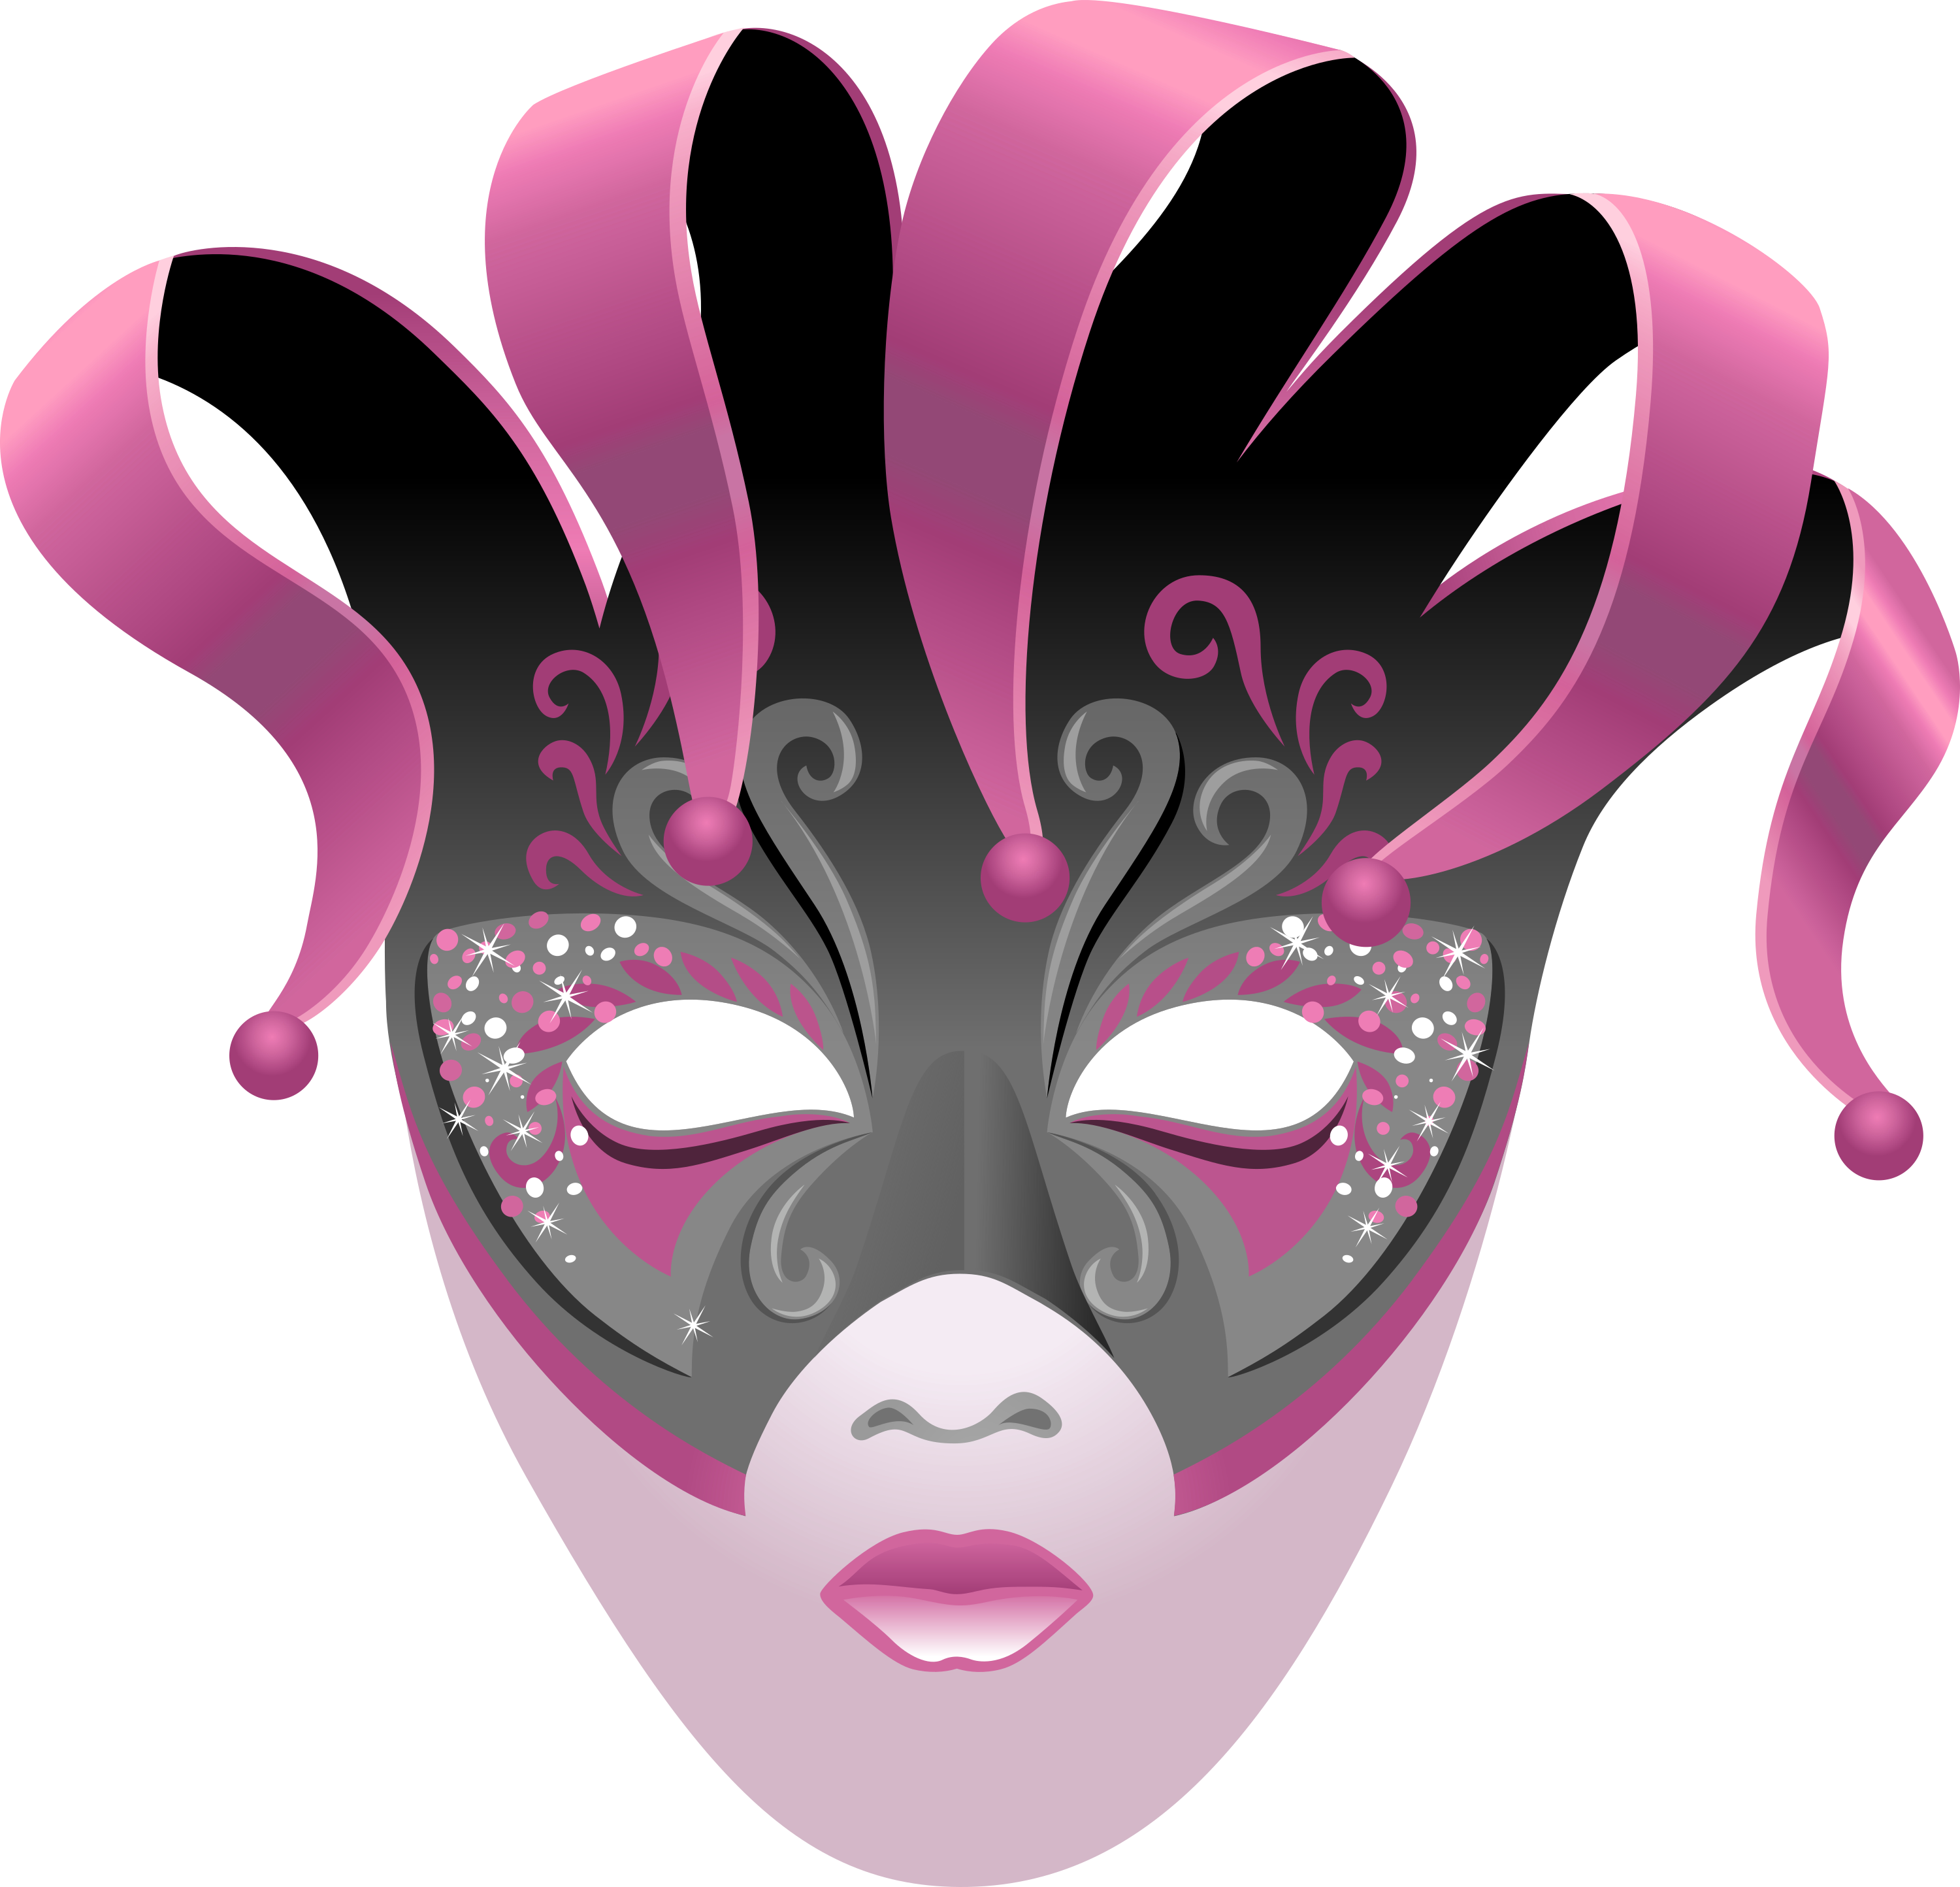 Mascara-colores-degradados-01-carnaval-2019 by Creaciones-Jean on